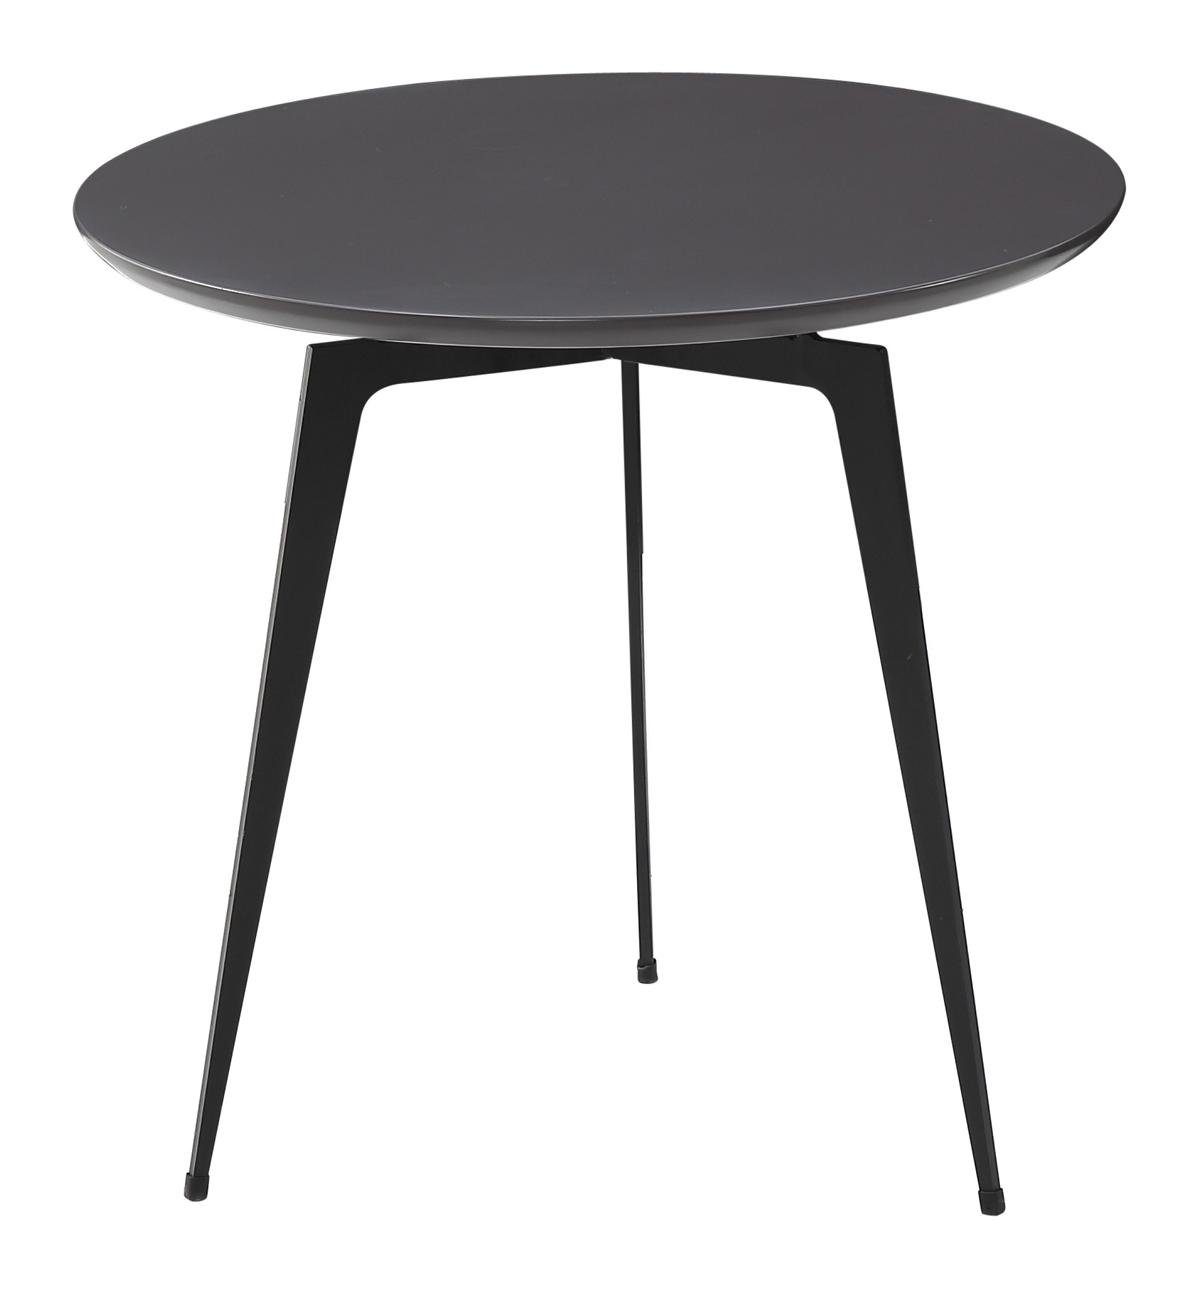 Design Tisch Couchtisch Tisch Runder Jafra Wohnzimmer Tische Couchtisch, Runde Sofa Beistelltisch